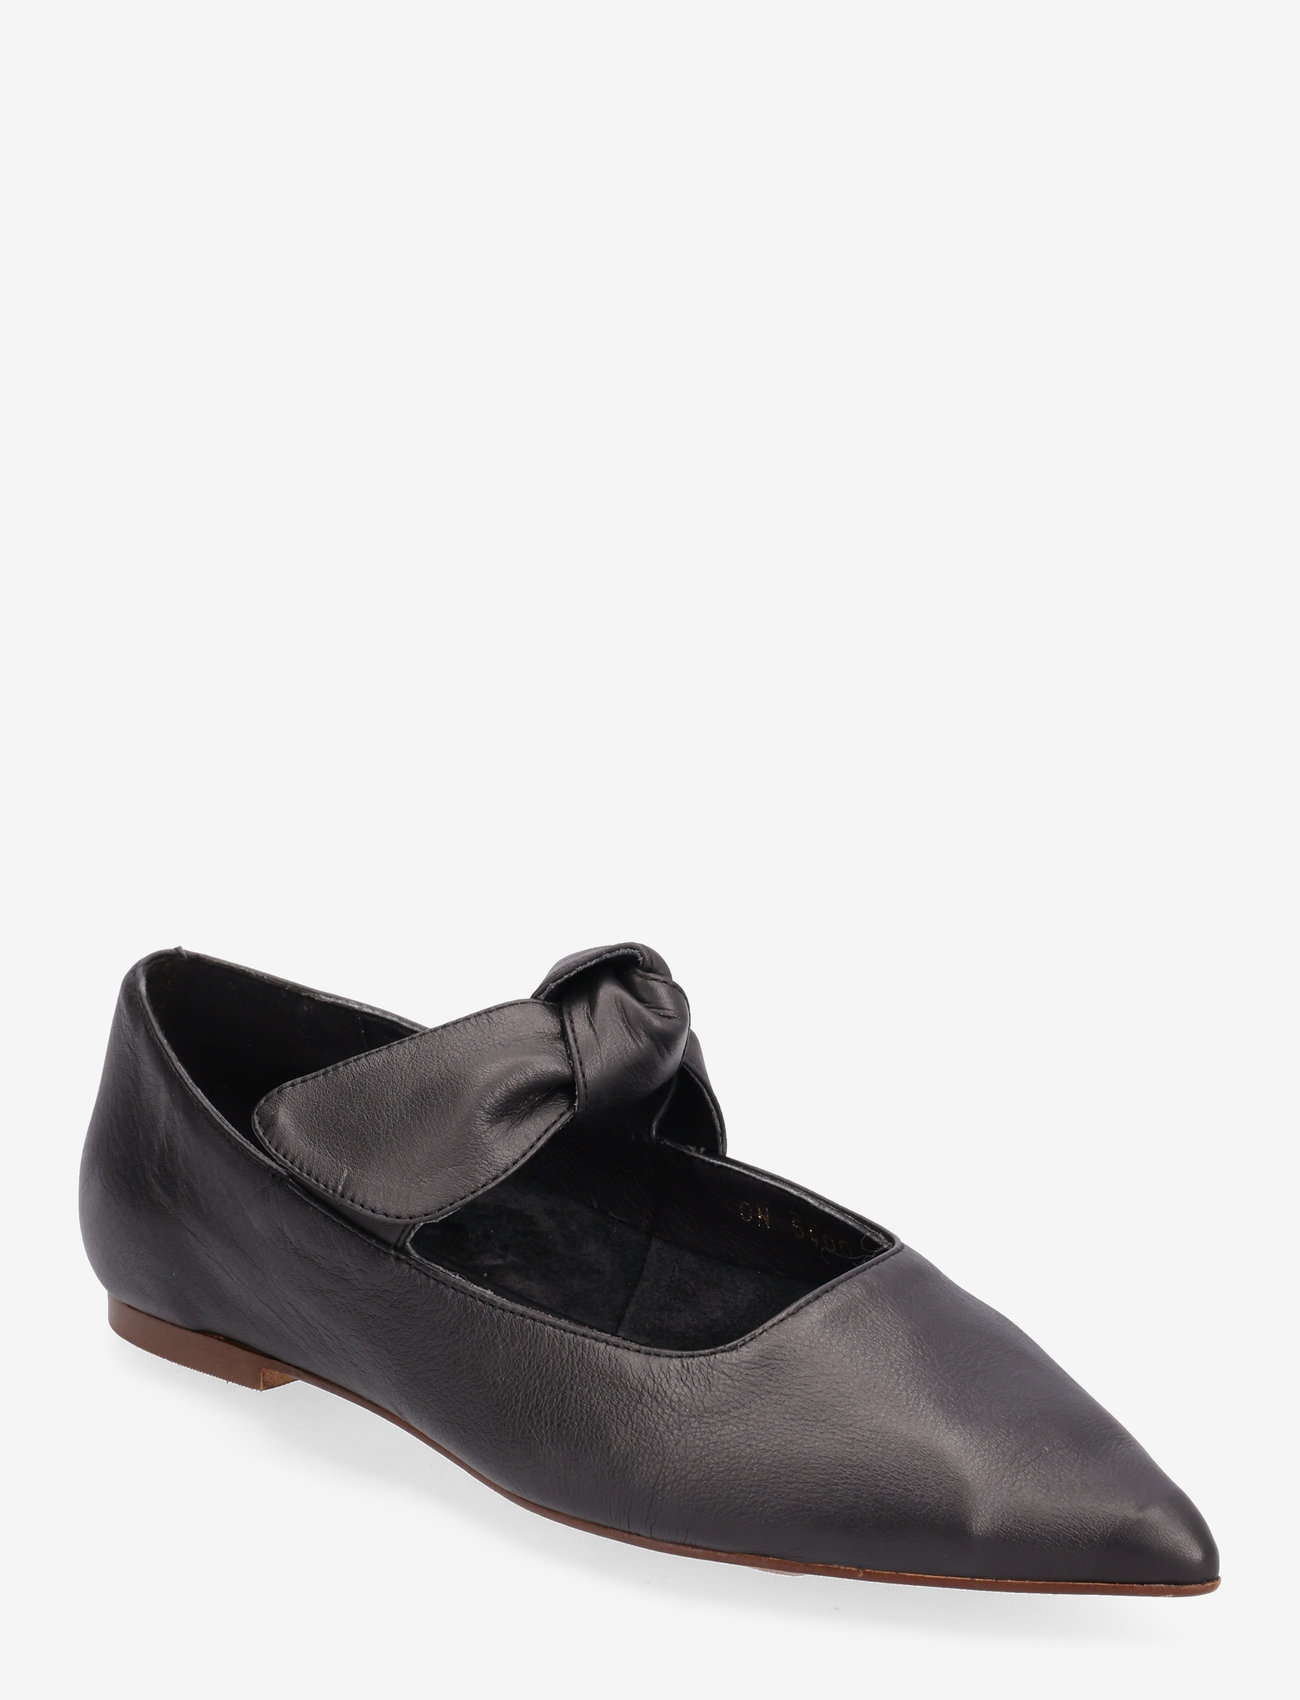 ALOHAS - Fossil Black Leather Ballet Flats - odzież imprezowa w cenach outletowych - black - 0